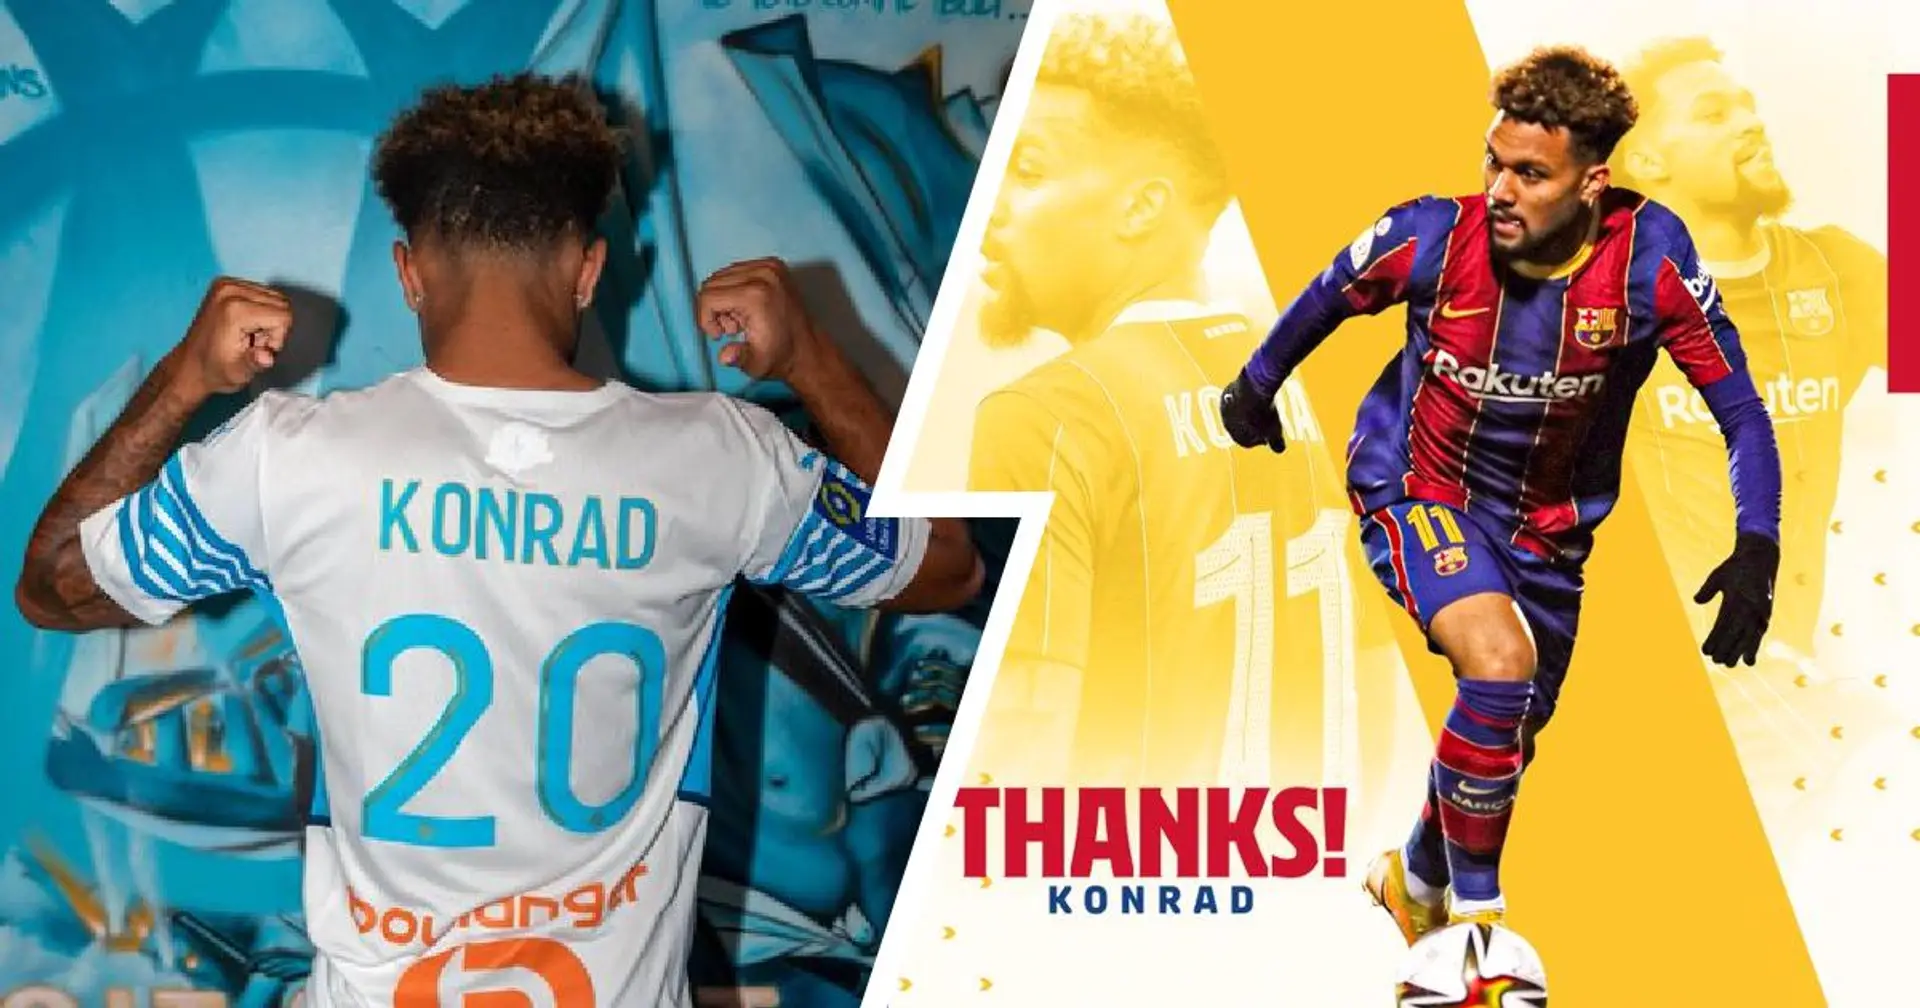 OFICIAL: El Barça vende a Konrad al Olympique de Marsella